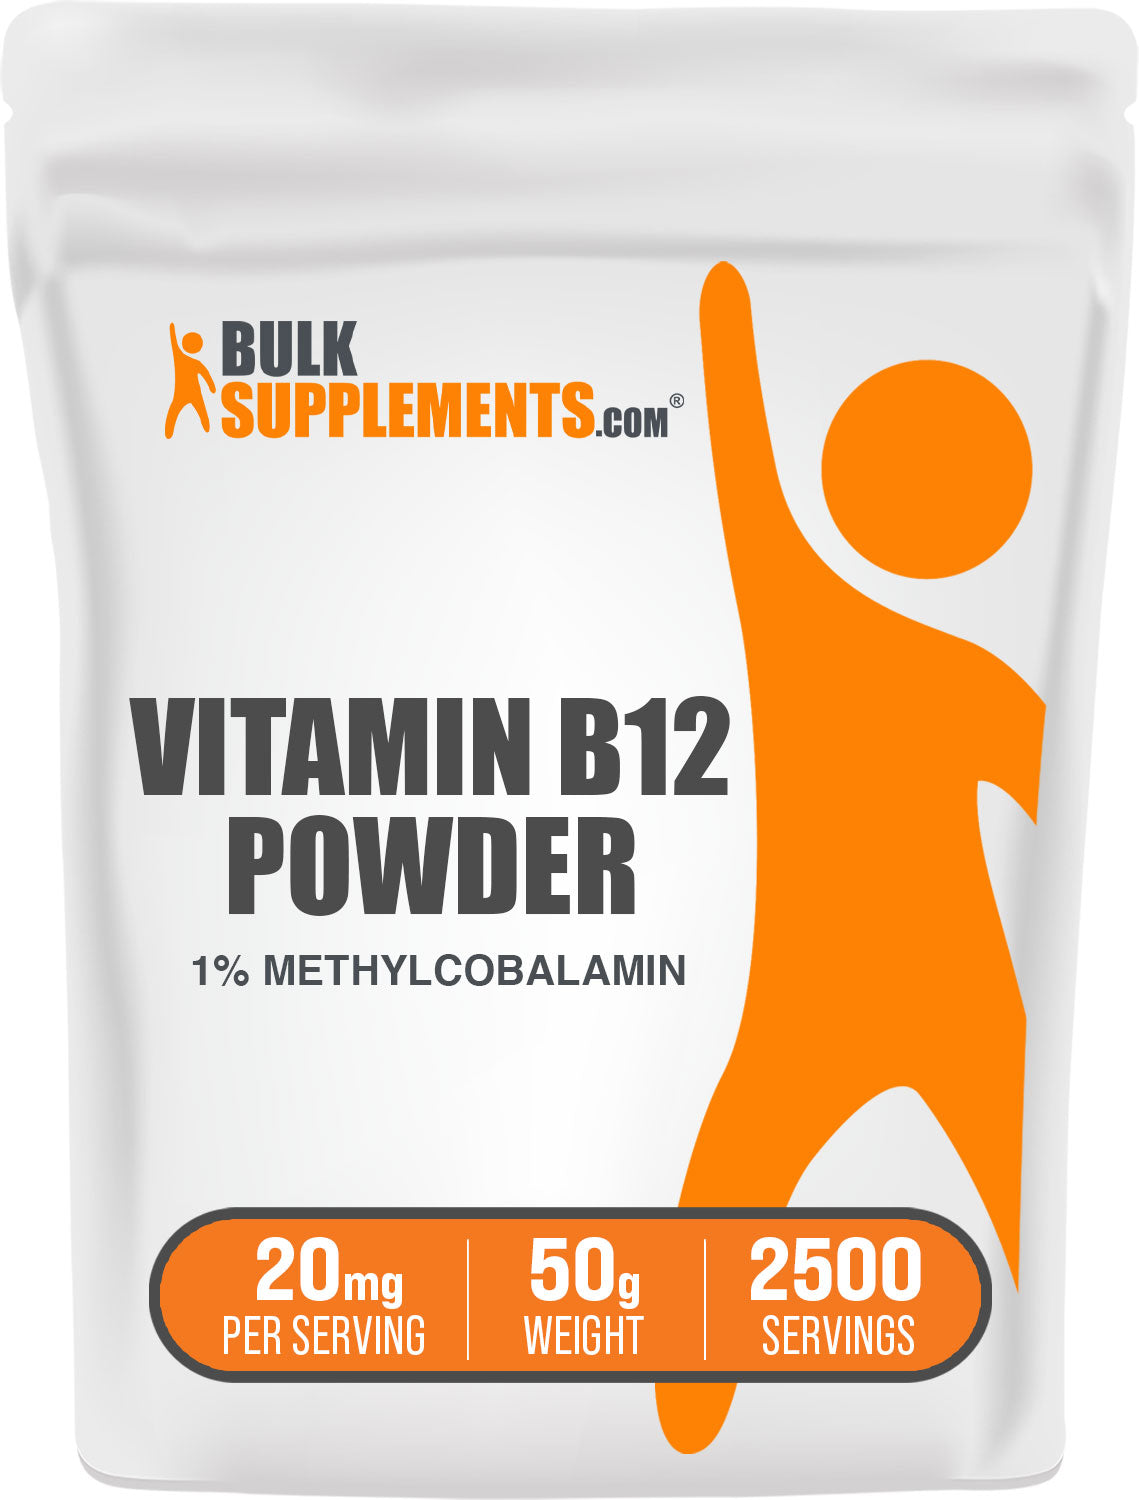 BulkSupplements.com Vitamin B12 Powder 1% Methylcobalamin 50g bag